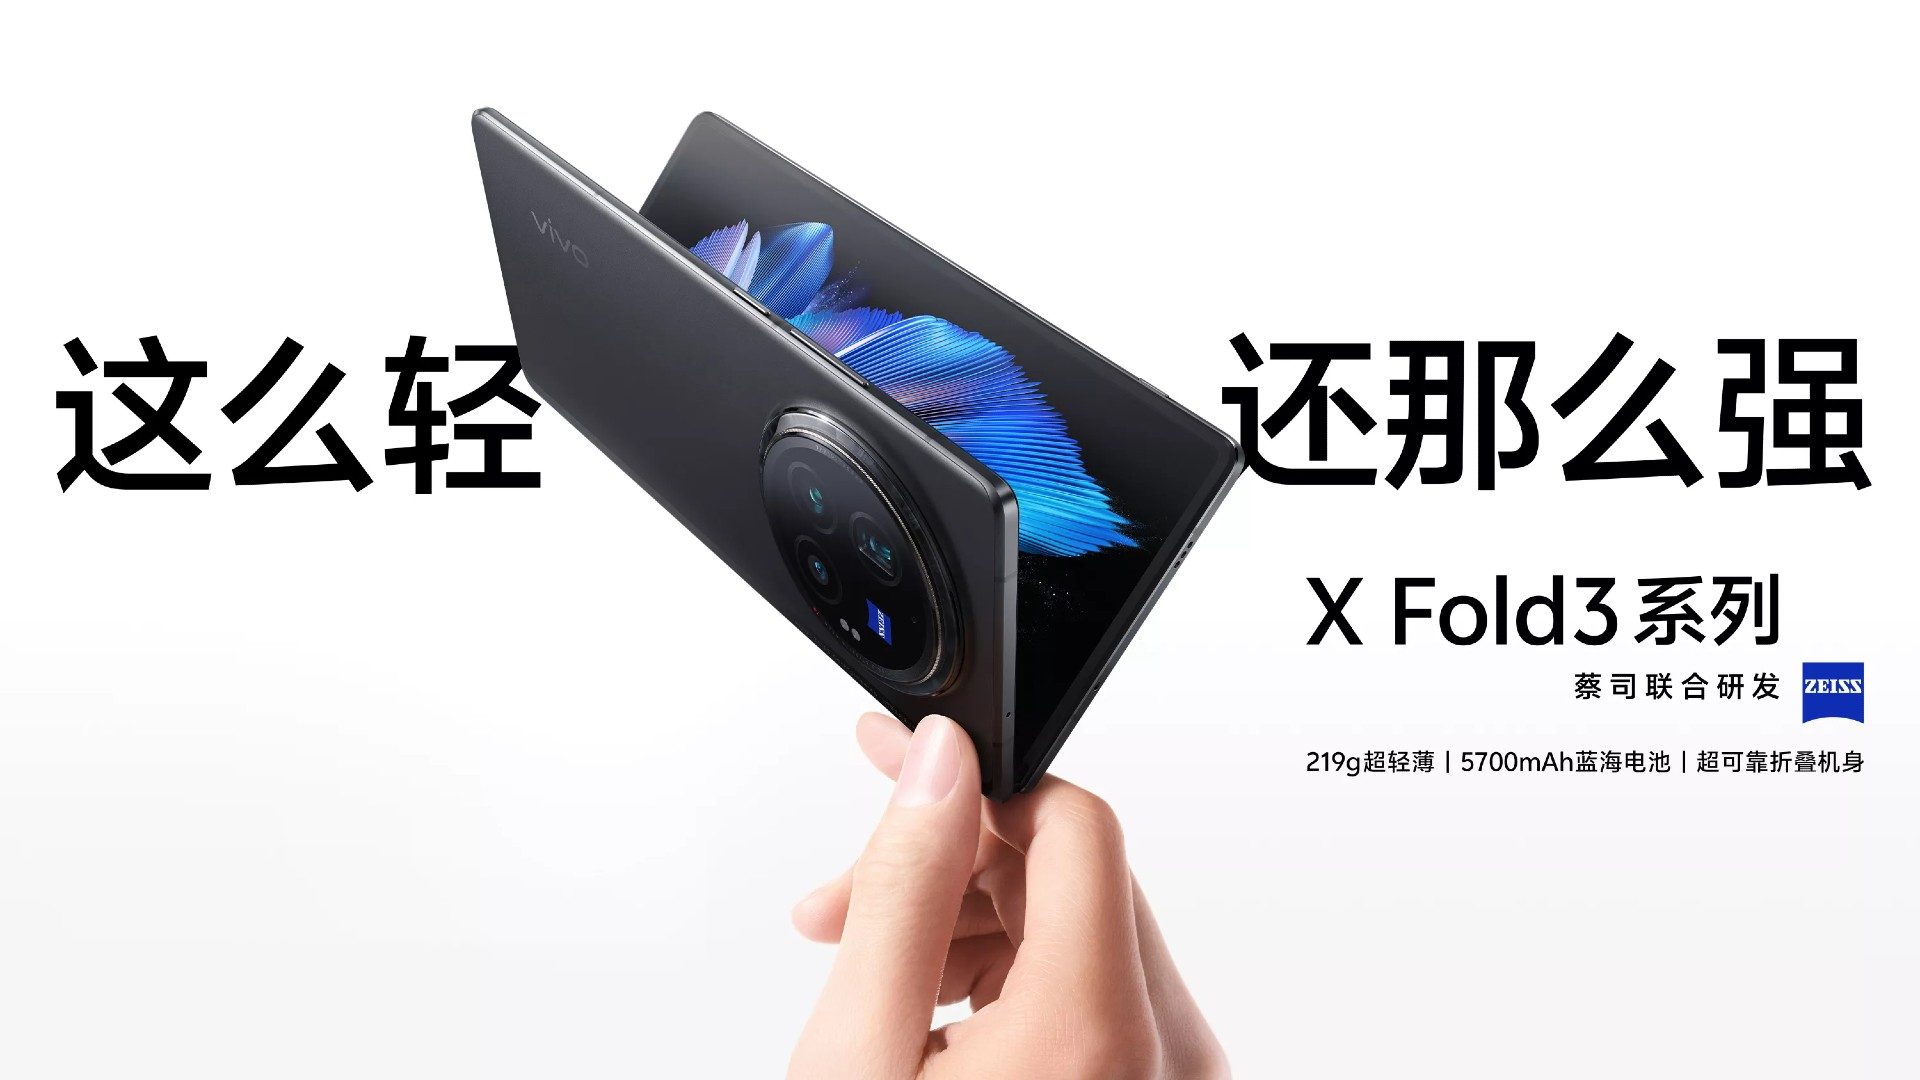 Hand hält halb aufgeklapptes Vivo Find X Fold 3 Pro. Daneben chinesische Schrift.